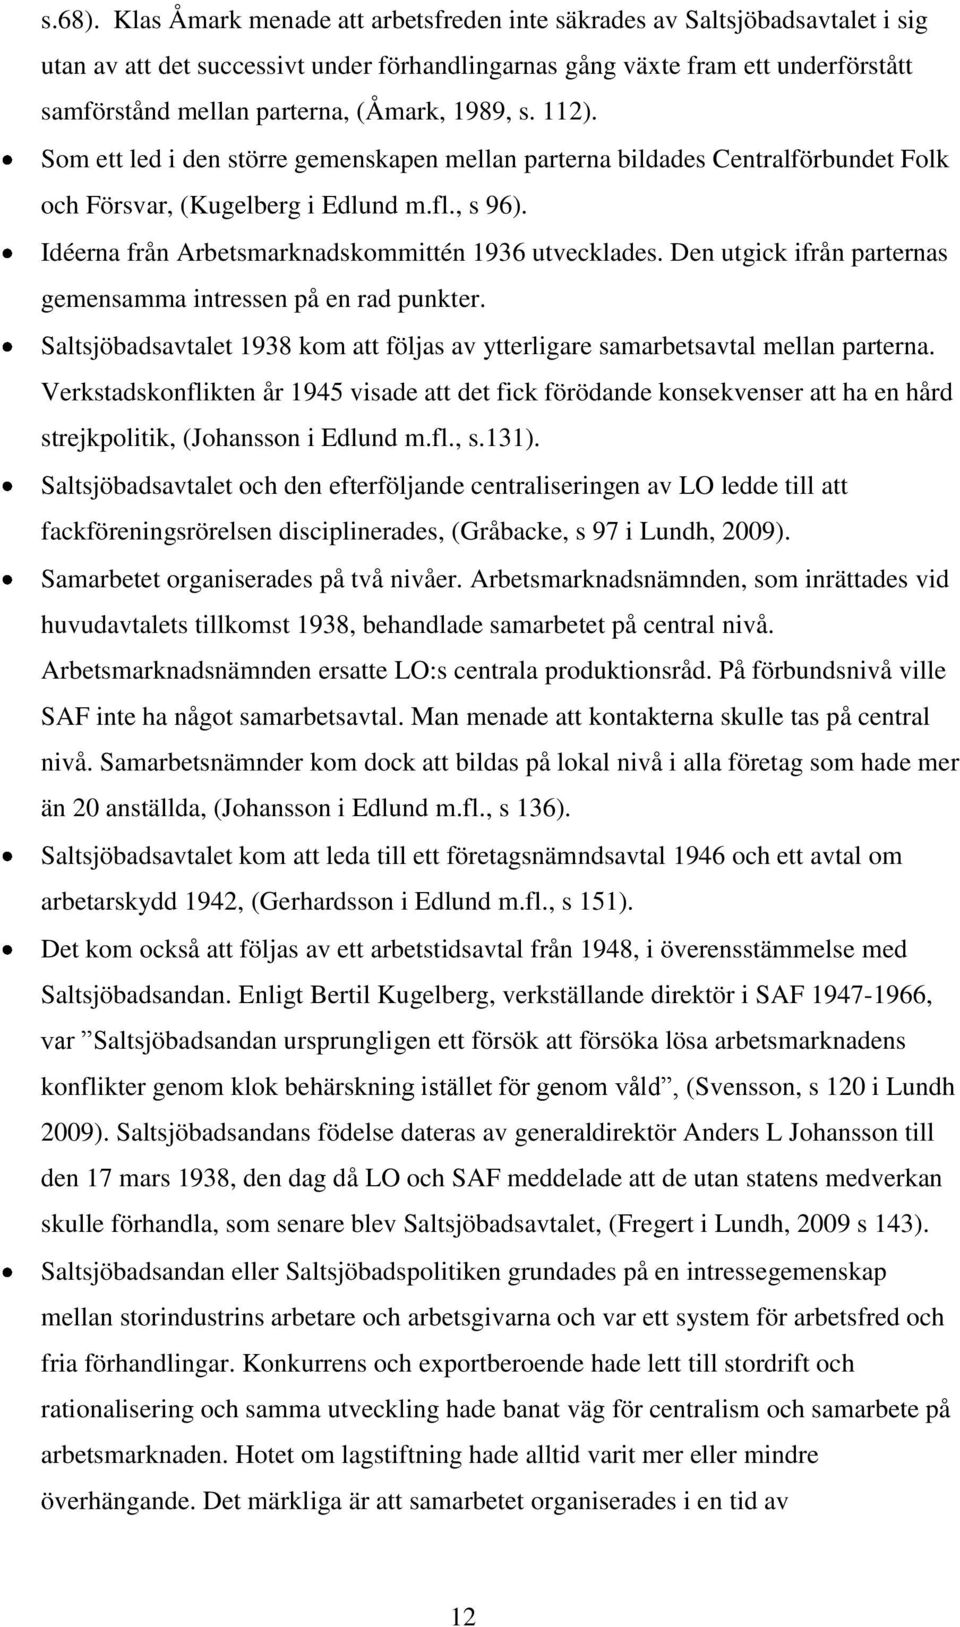 1989, s. 112). Som ett led i den större gemenskapen mellan parterna bildades Centralförbundet Folk och Försvar, (Kugelberg i Edlund m.fl., s 96). Idéerna från Arbetsmarknadskommittén 1936 utvecklades.